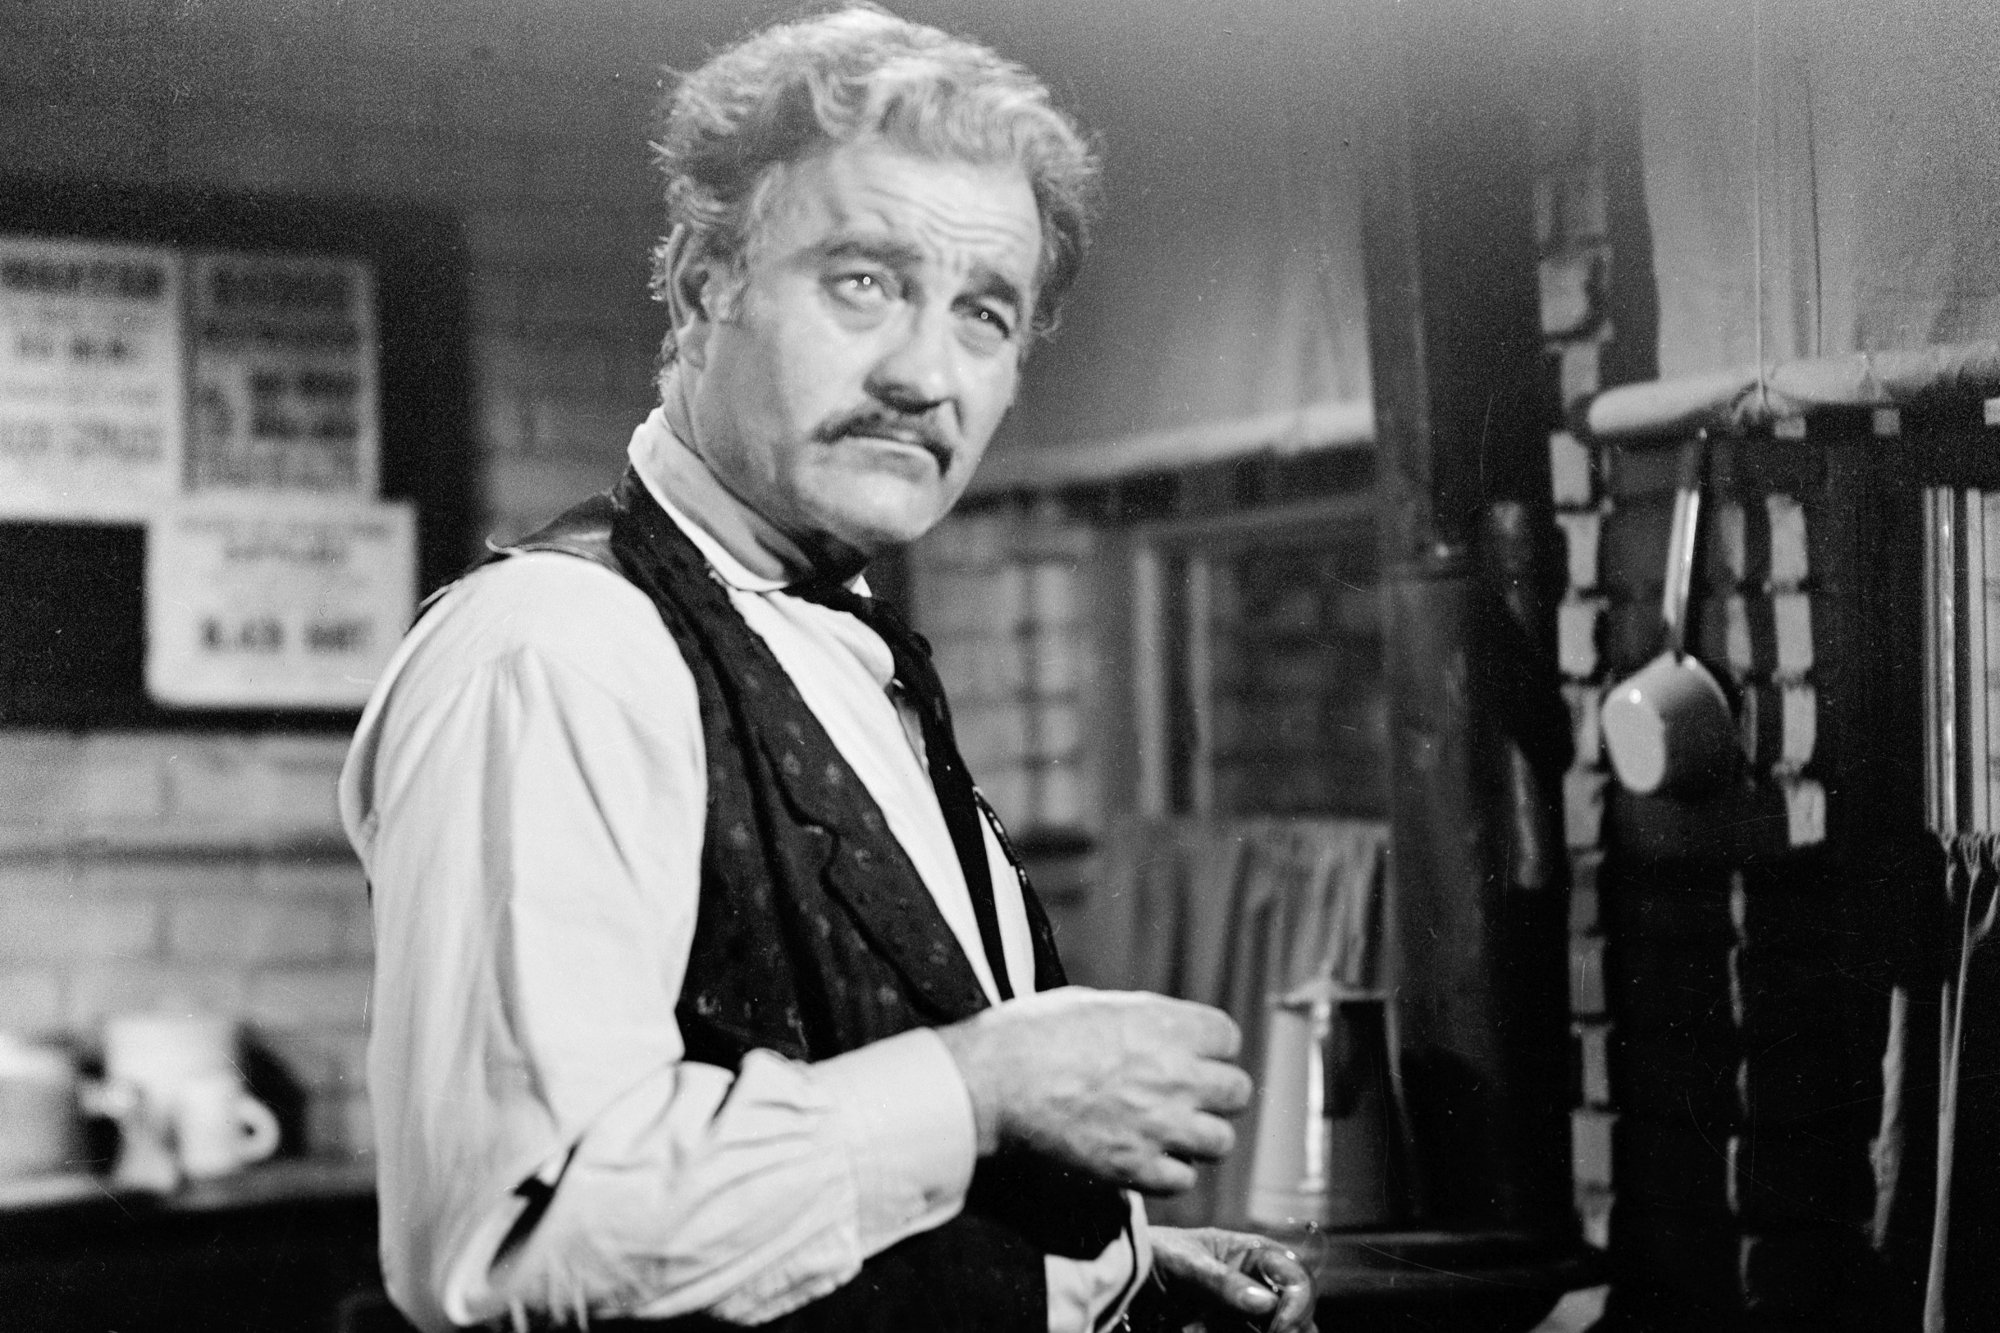 'Gunsmoke' Milburn Stone as Doc Adams looking sick in a Western outfit